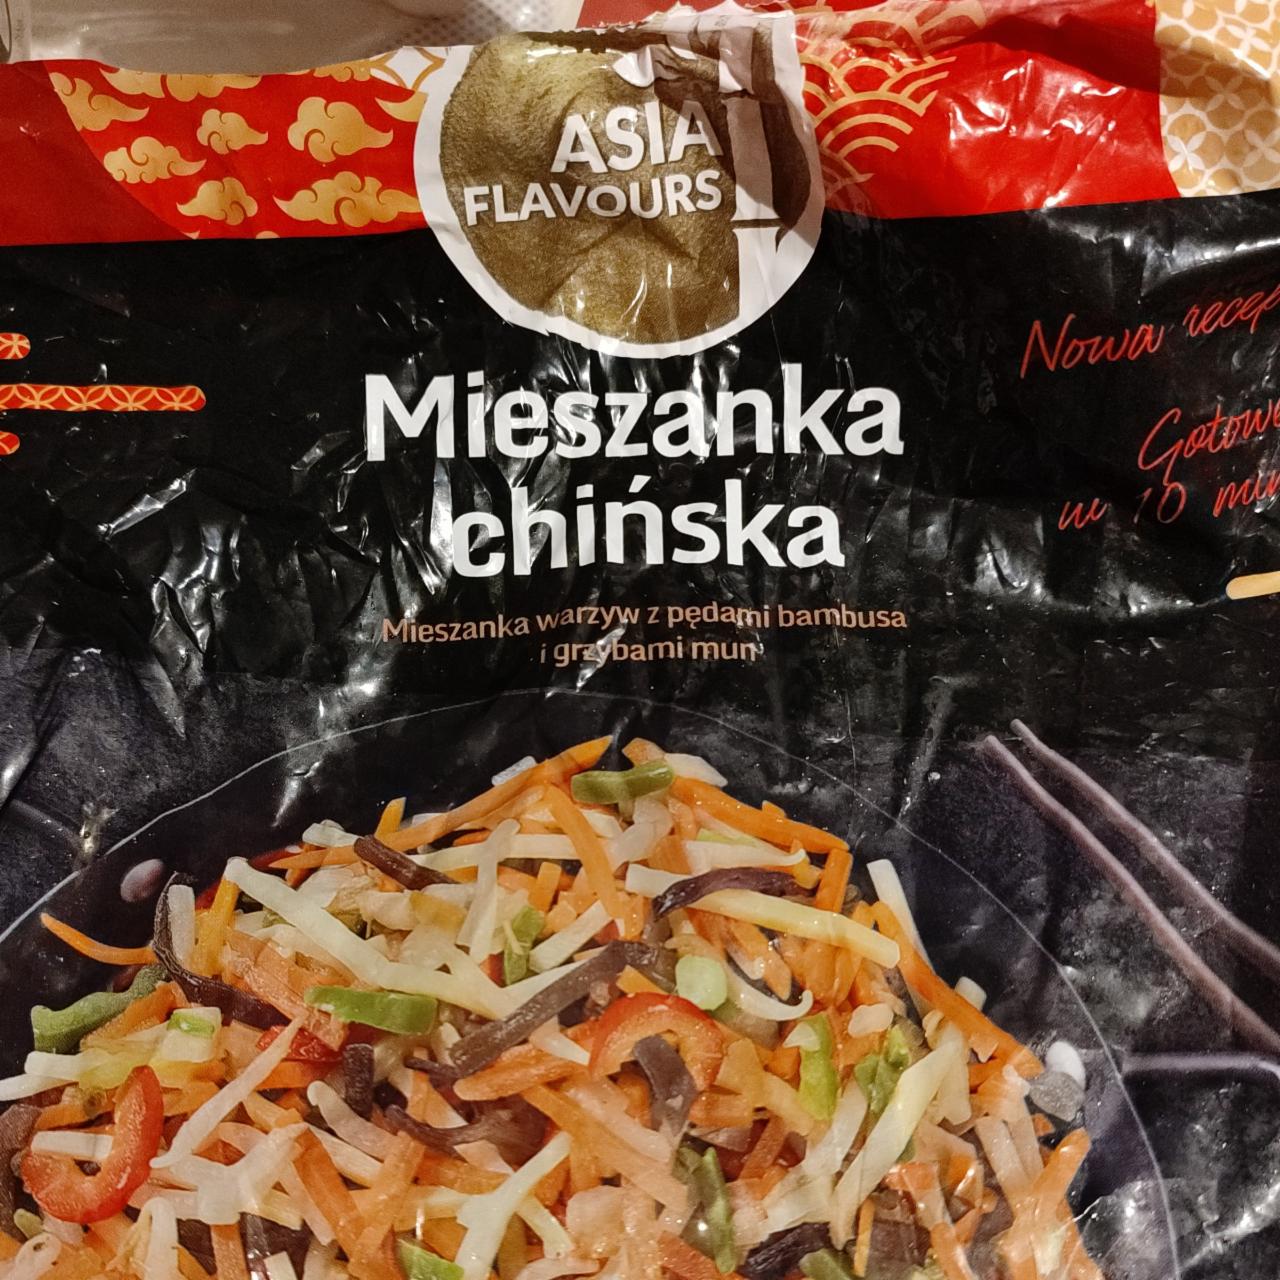 Фото - Mieszanka chińska Asia Flavours